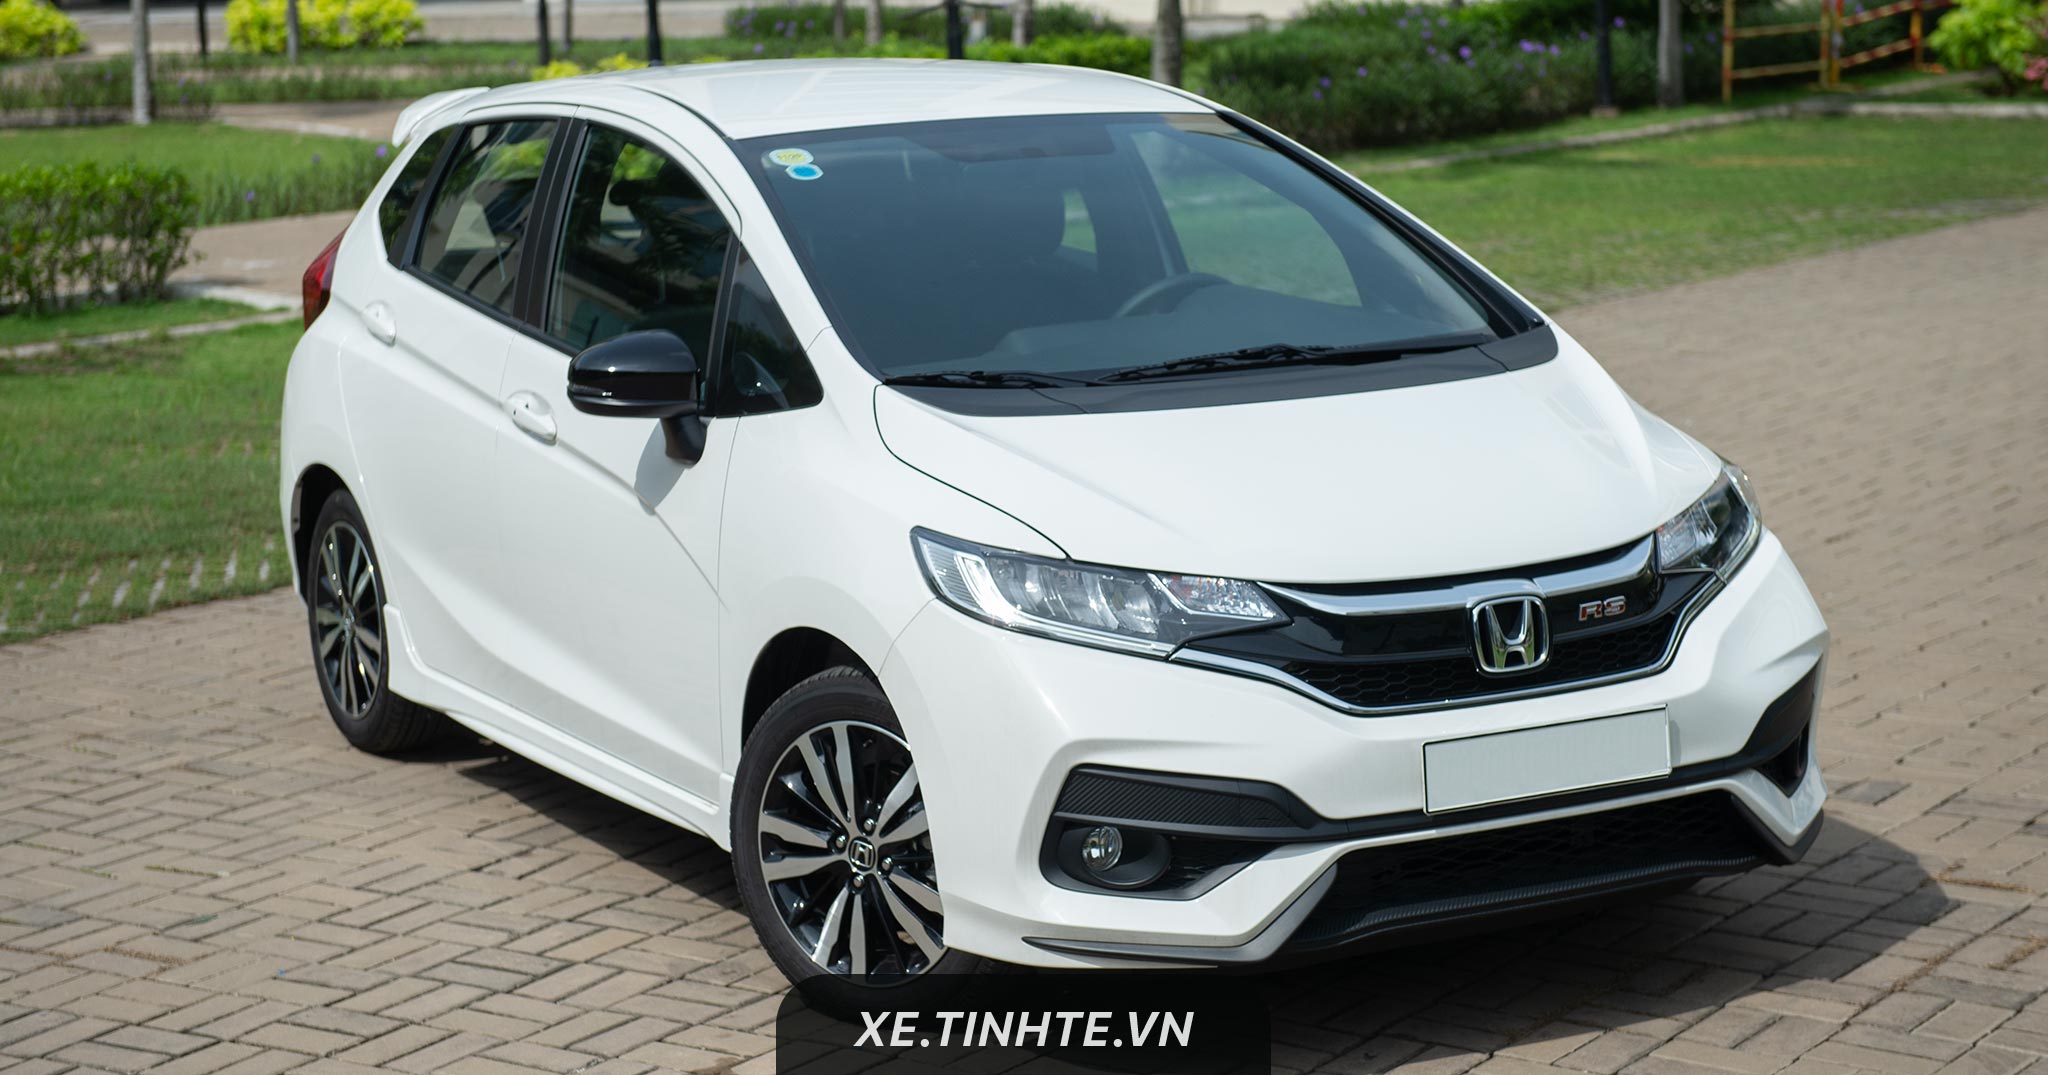 Tháng 5/2018, Honda Việt Nam bán được ít xe hơn tháng trước nhưng vẫn tăng trưởng so với năm 2017